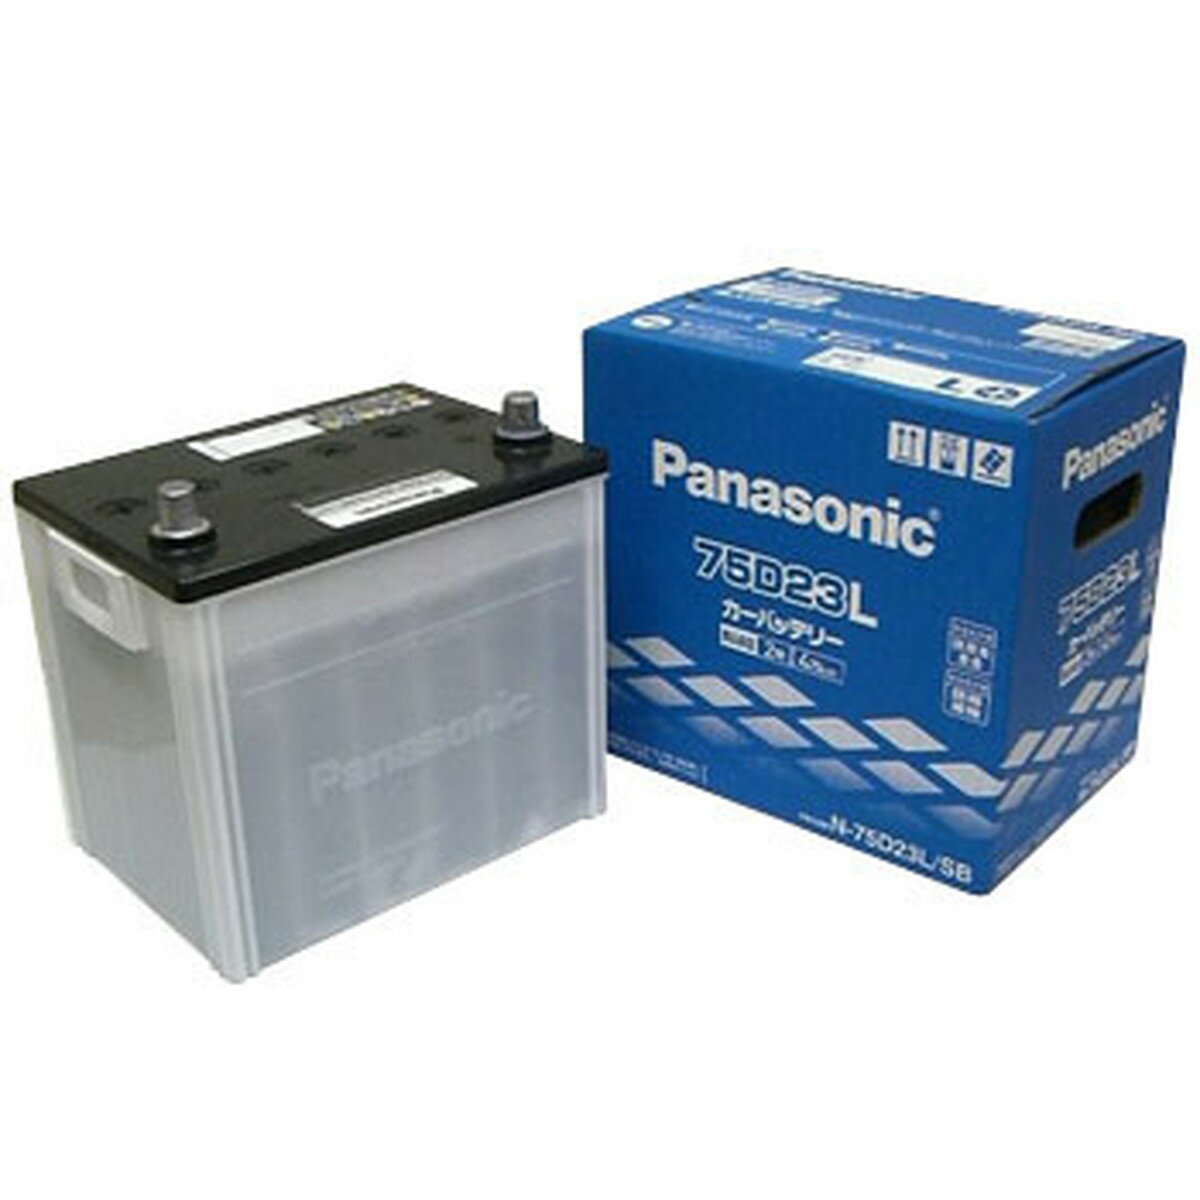 【在庫有 即納】 Panasonic/パナソニック 国産車バッテリー SBシリーズ N-75D23L